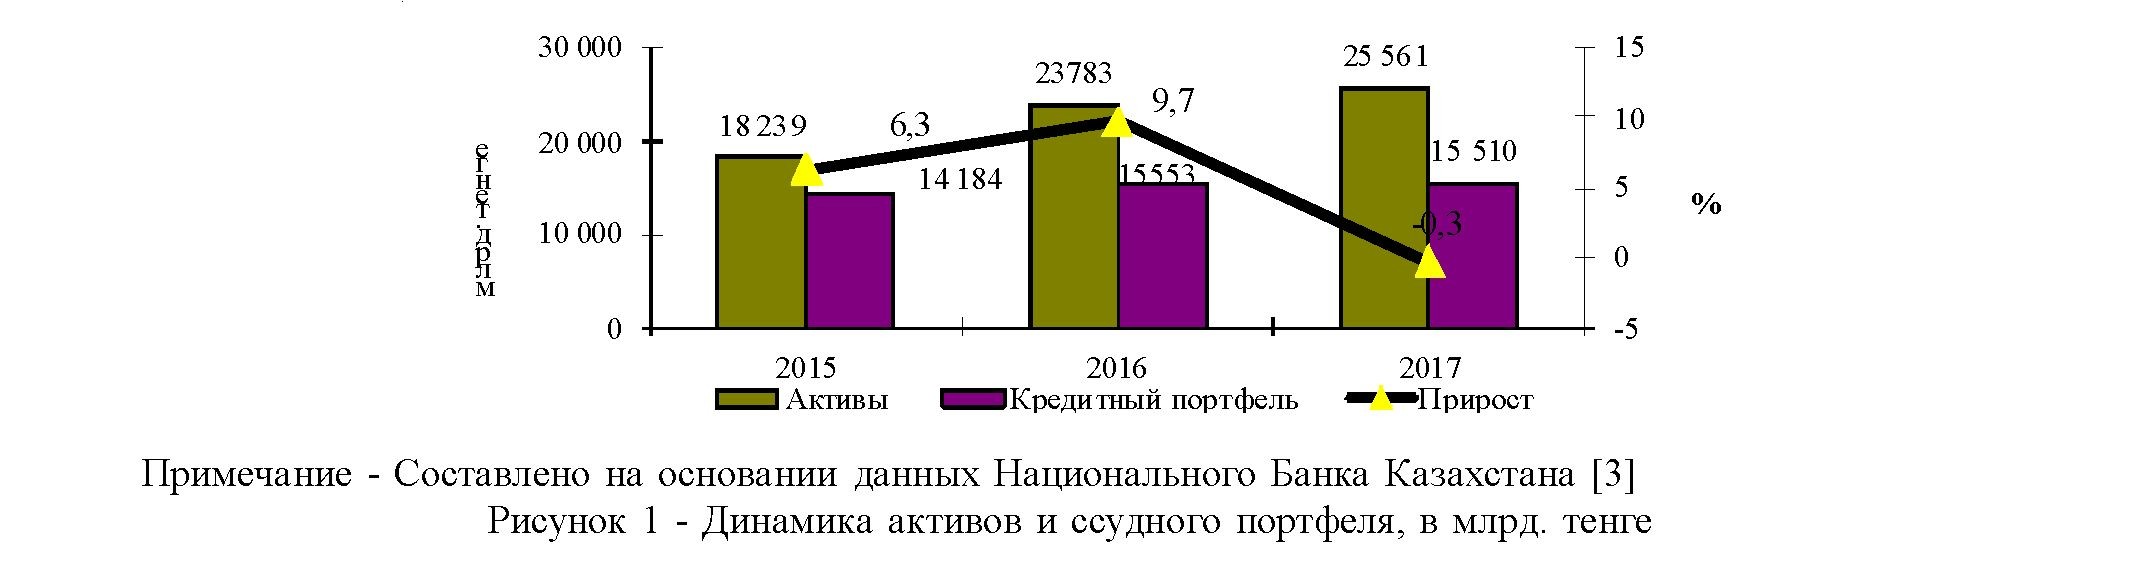 Оценка текущего состояния кредитного портфеля банковского сектора республики Казахстан